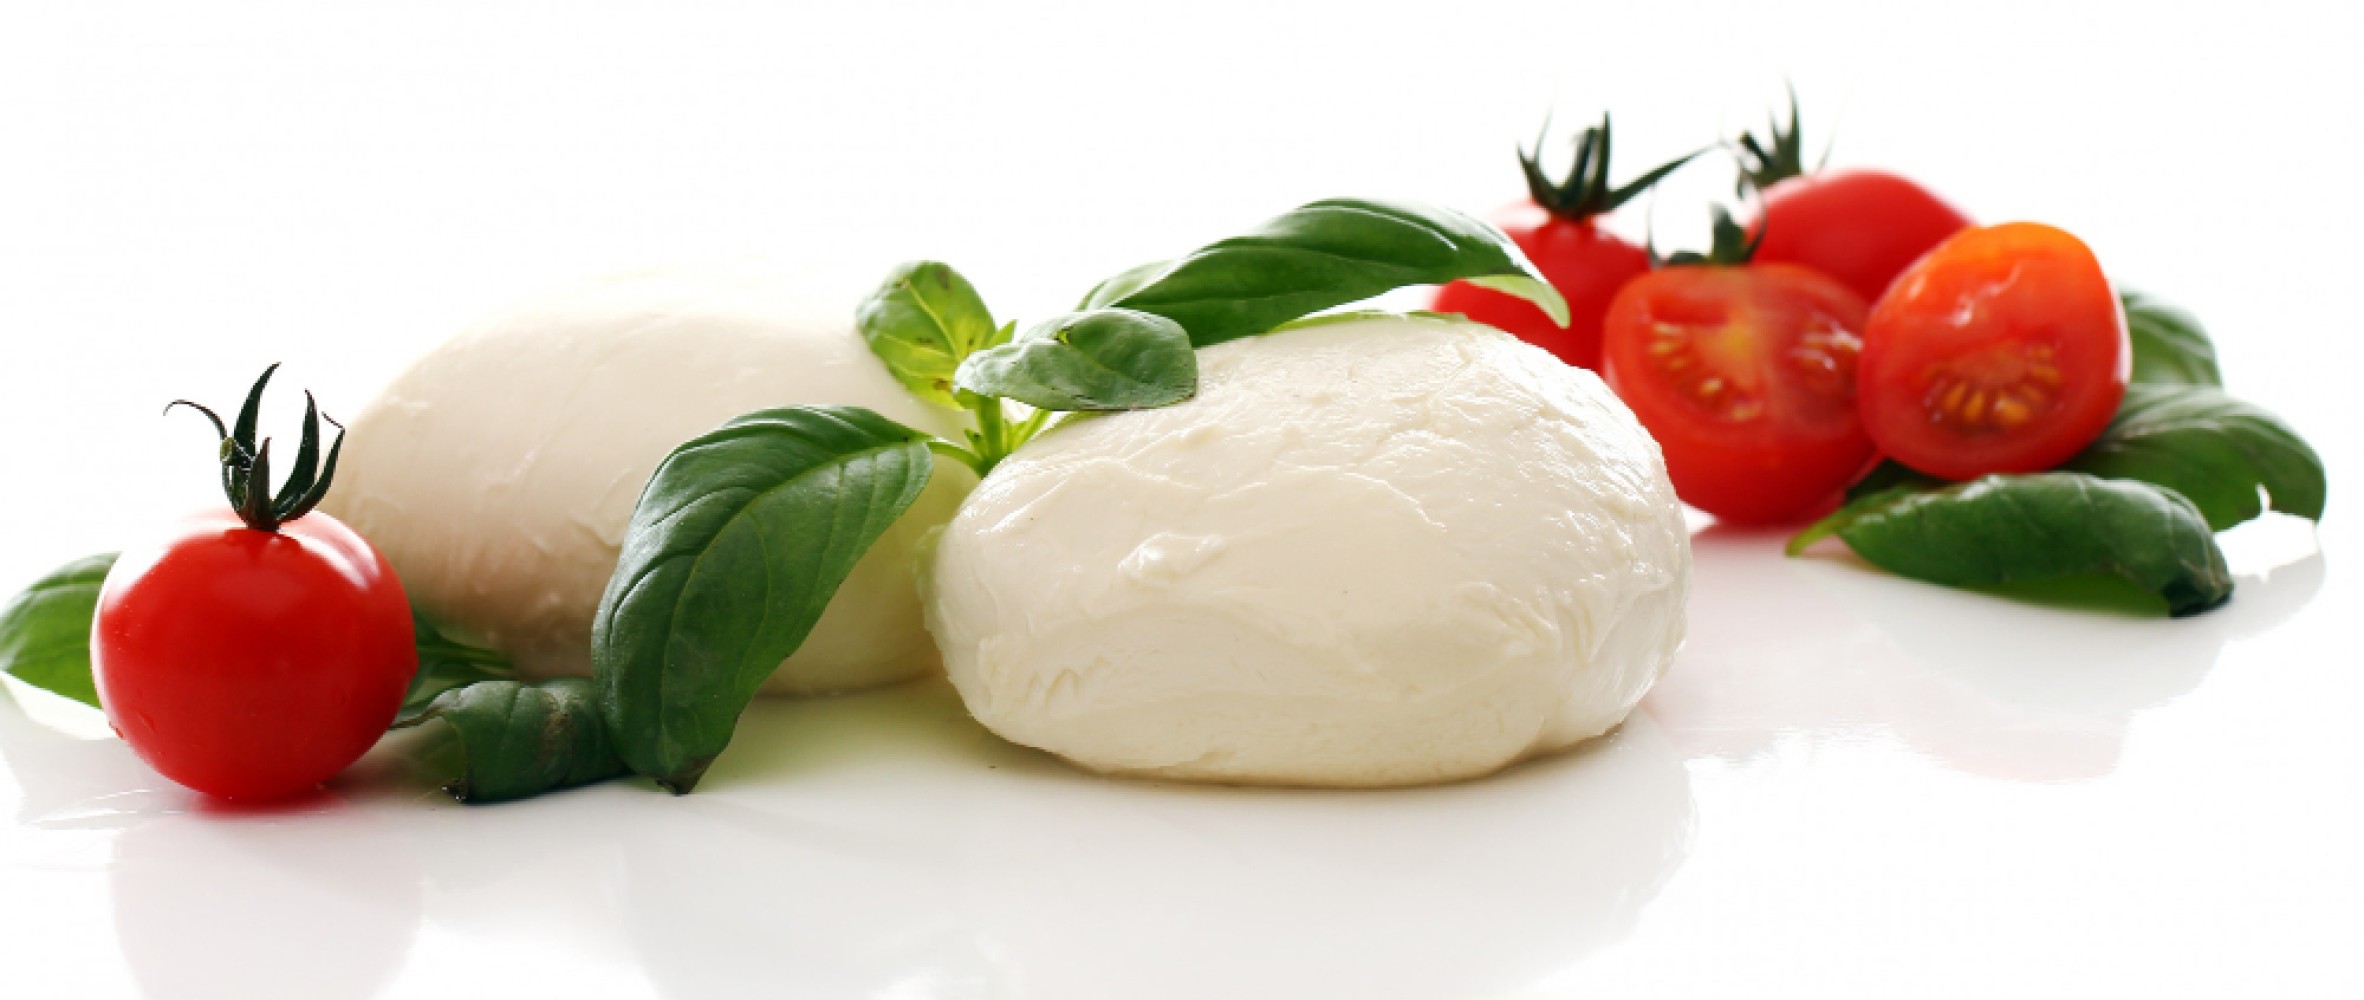 Сыр моцарелла — это сыр, родиной которого является Италия. Традиционно его делают из молока буйволов, но его также можно делать из коровьего молока